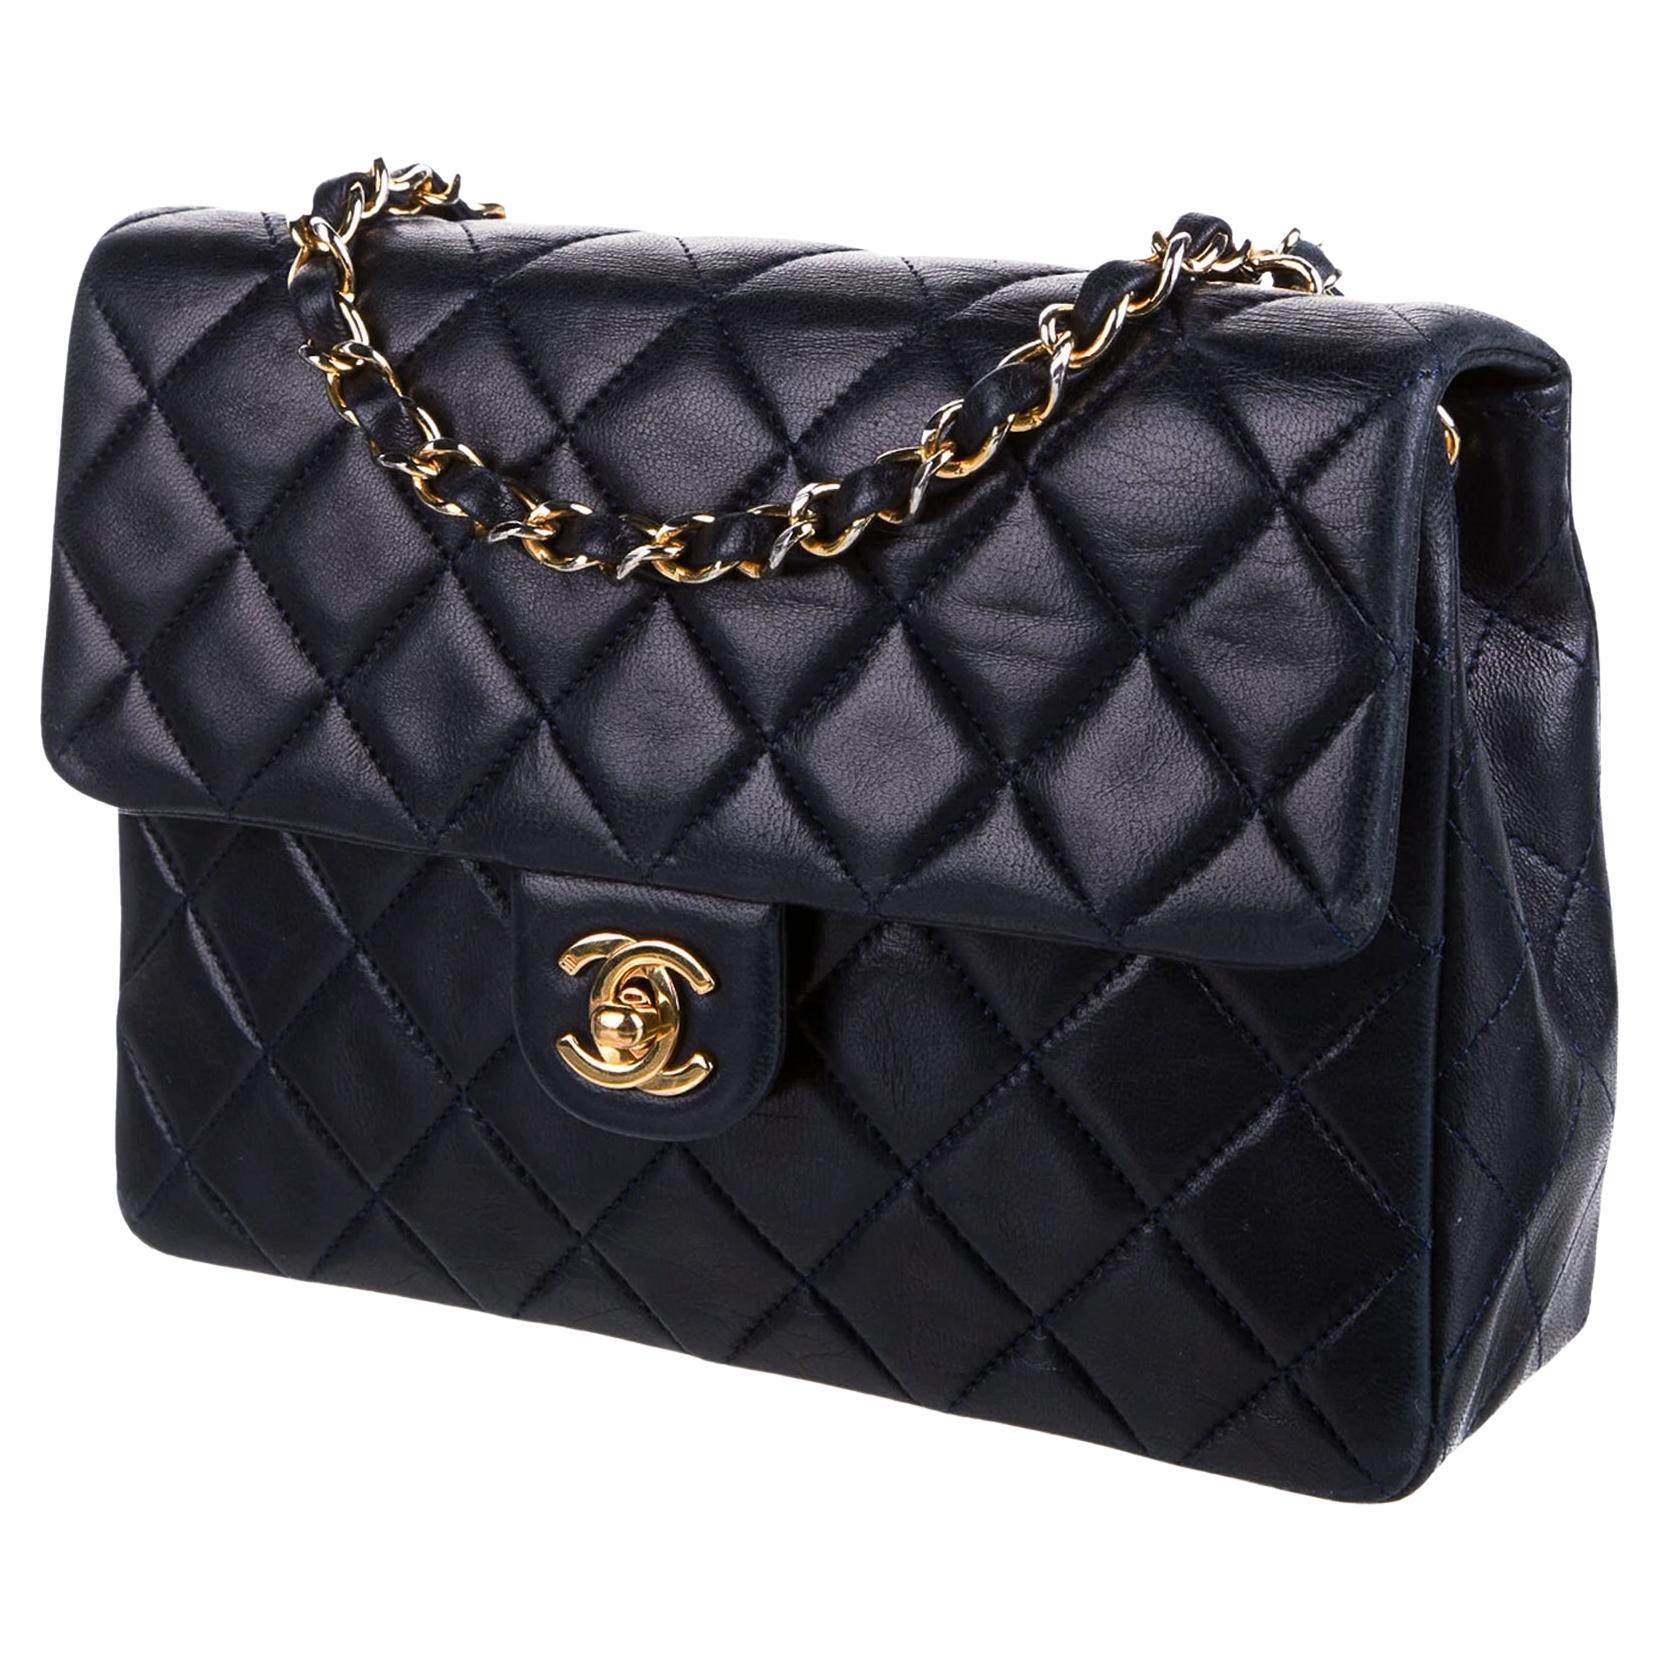 Vintage Chanel black 2.55 double flap shoulder bag. Paris limited